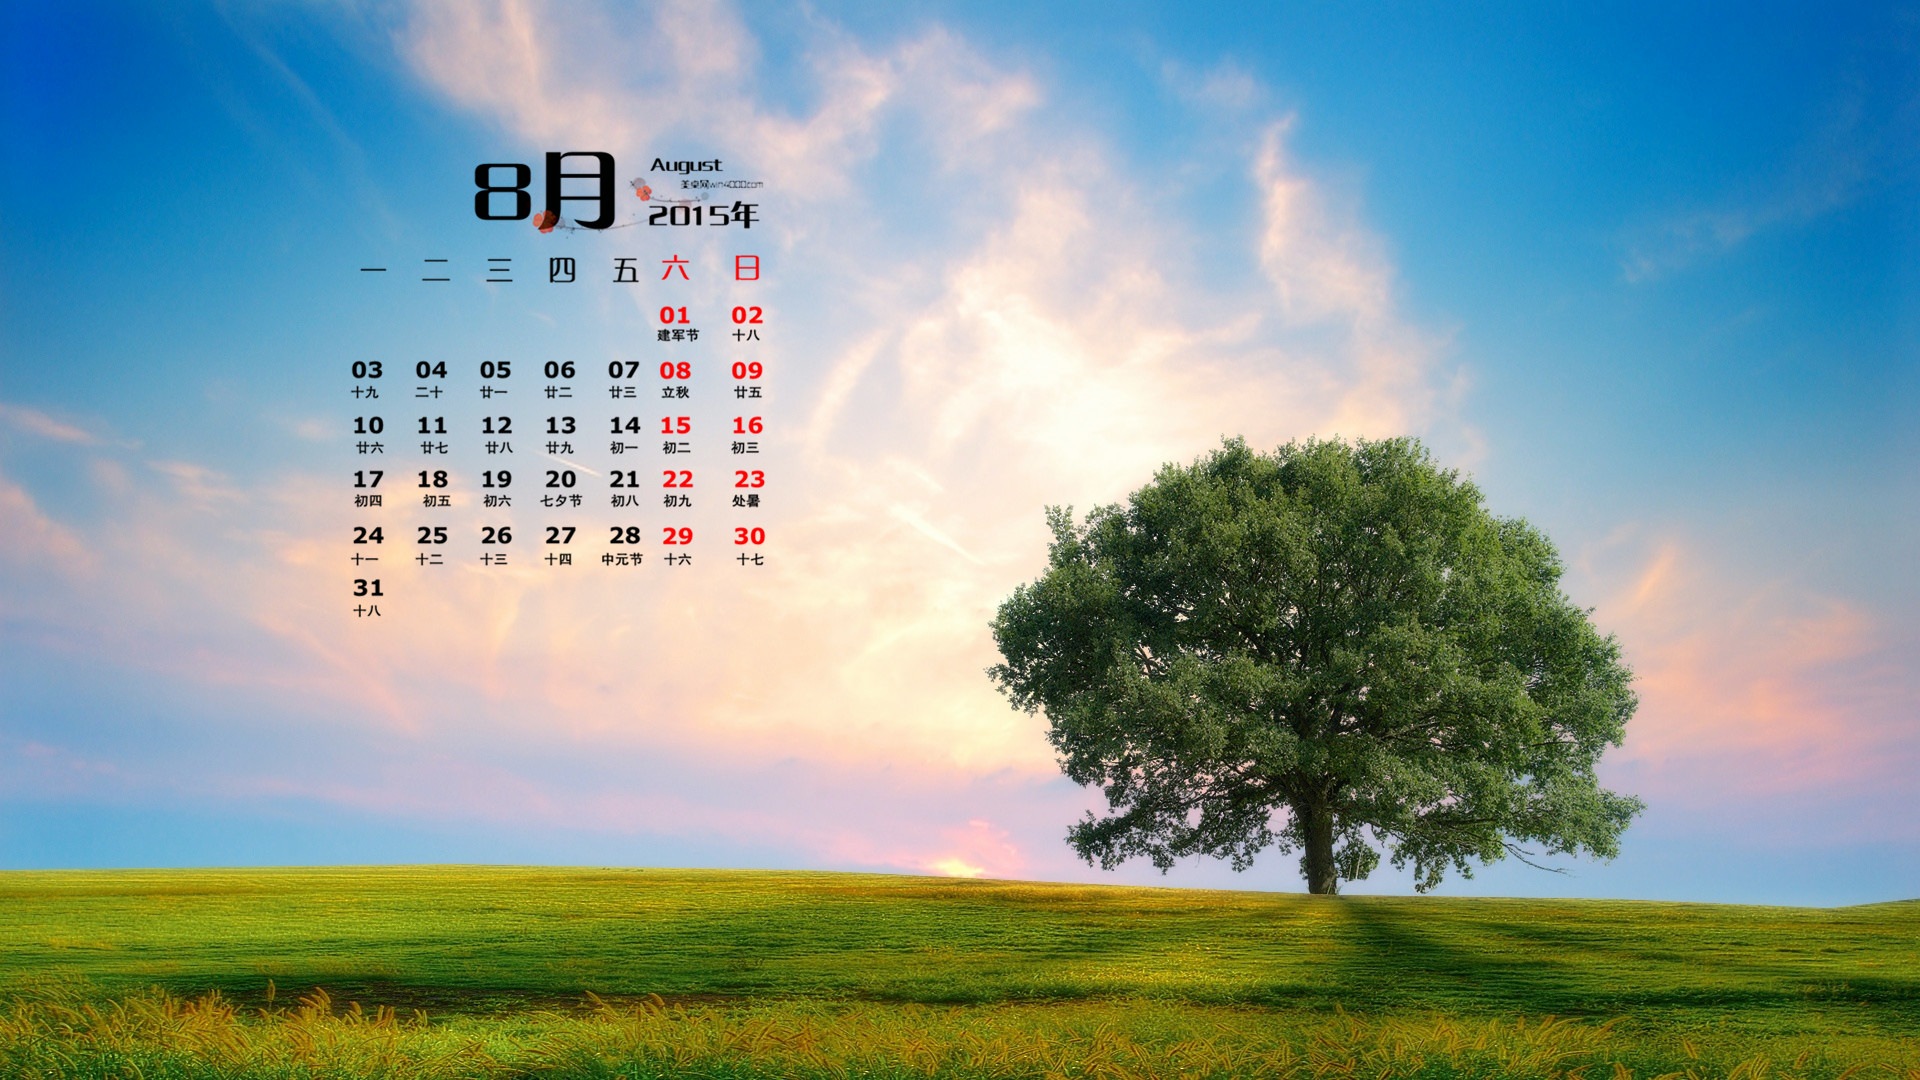 August 2015 calendar wallpaper (1) #8 - 1920x1080